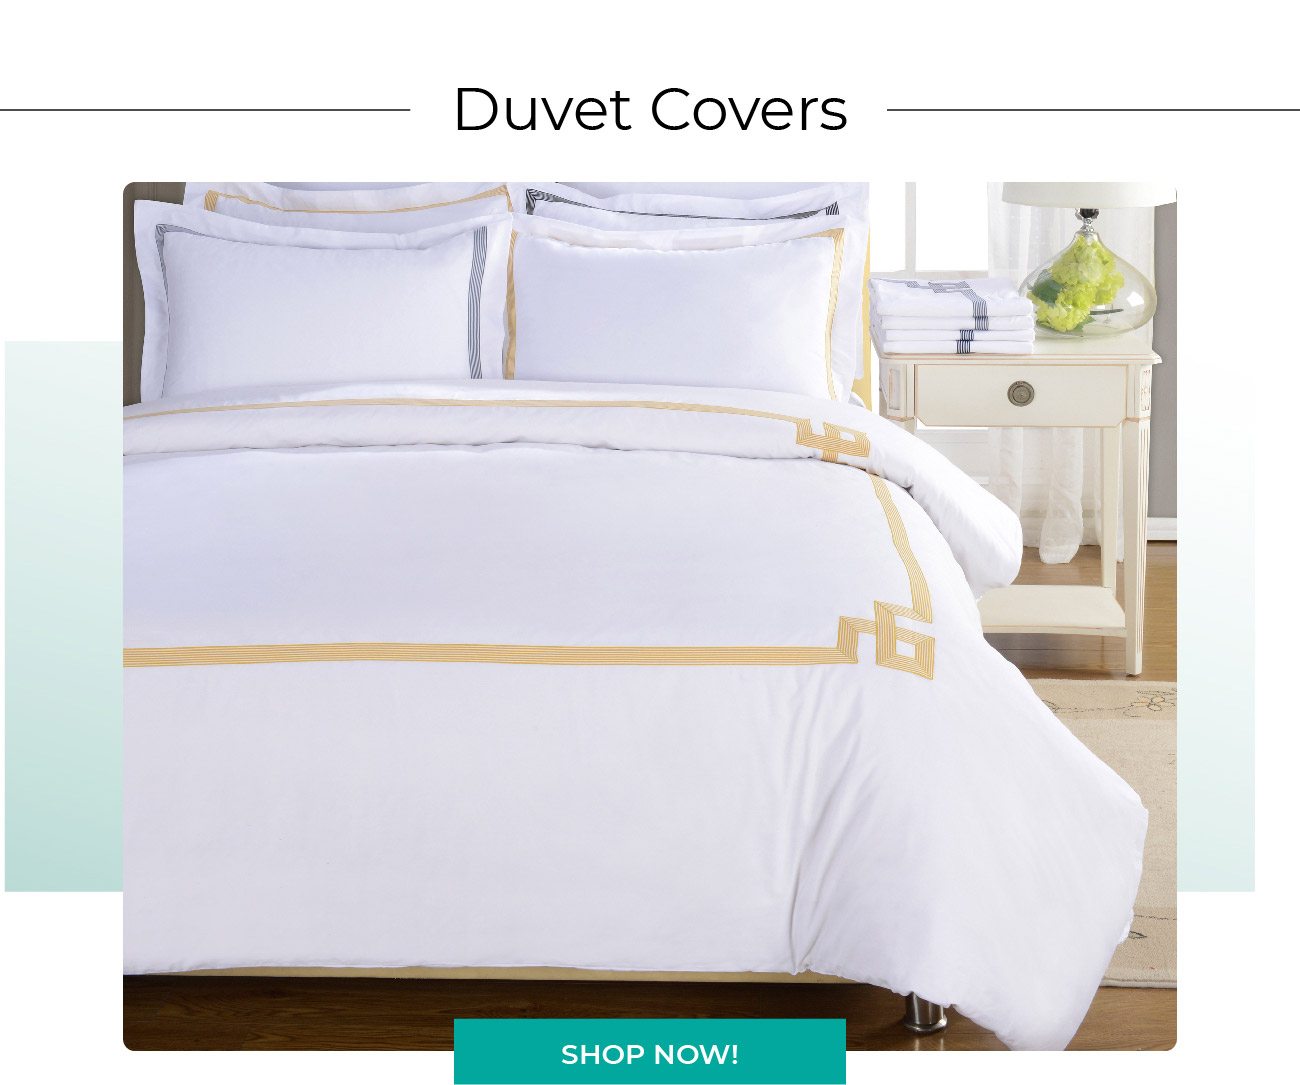 Duvet Covers